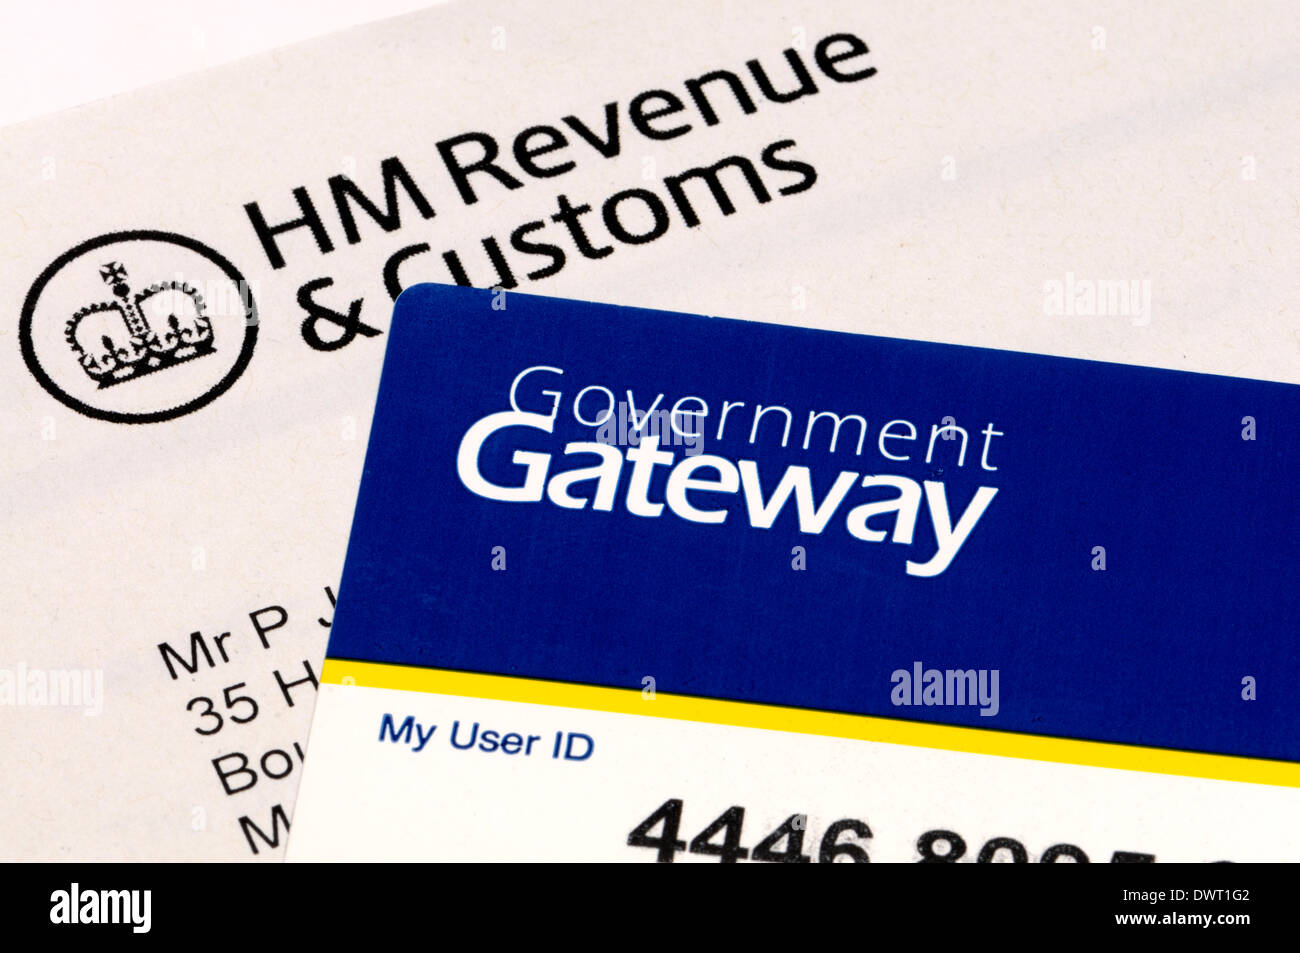 Britische Steuer - HM Customs und Einnahmen Regierung Gateway (Online-Steuererklärungen) Stockfoto